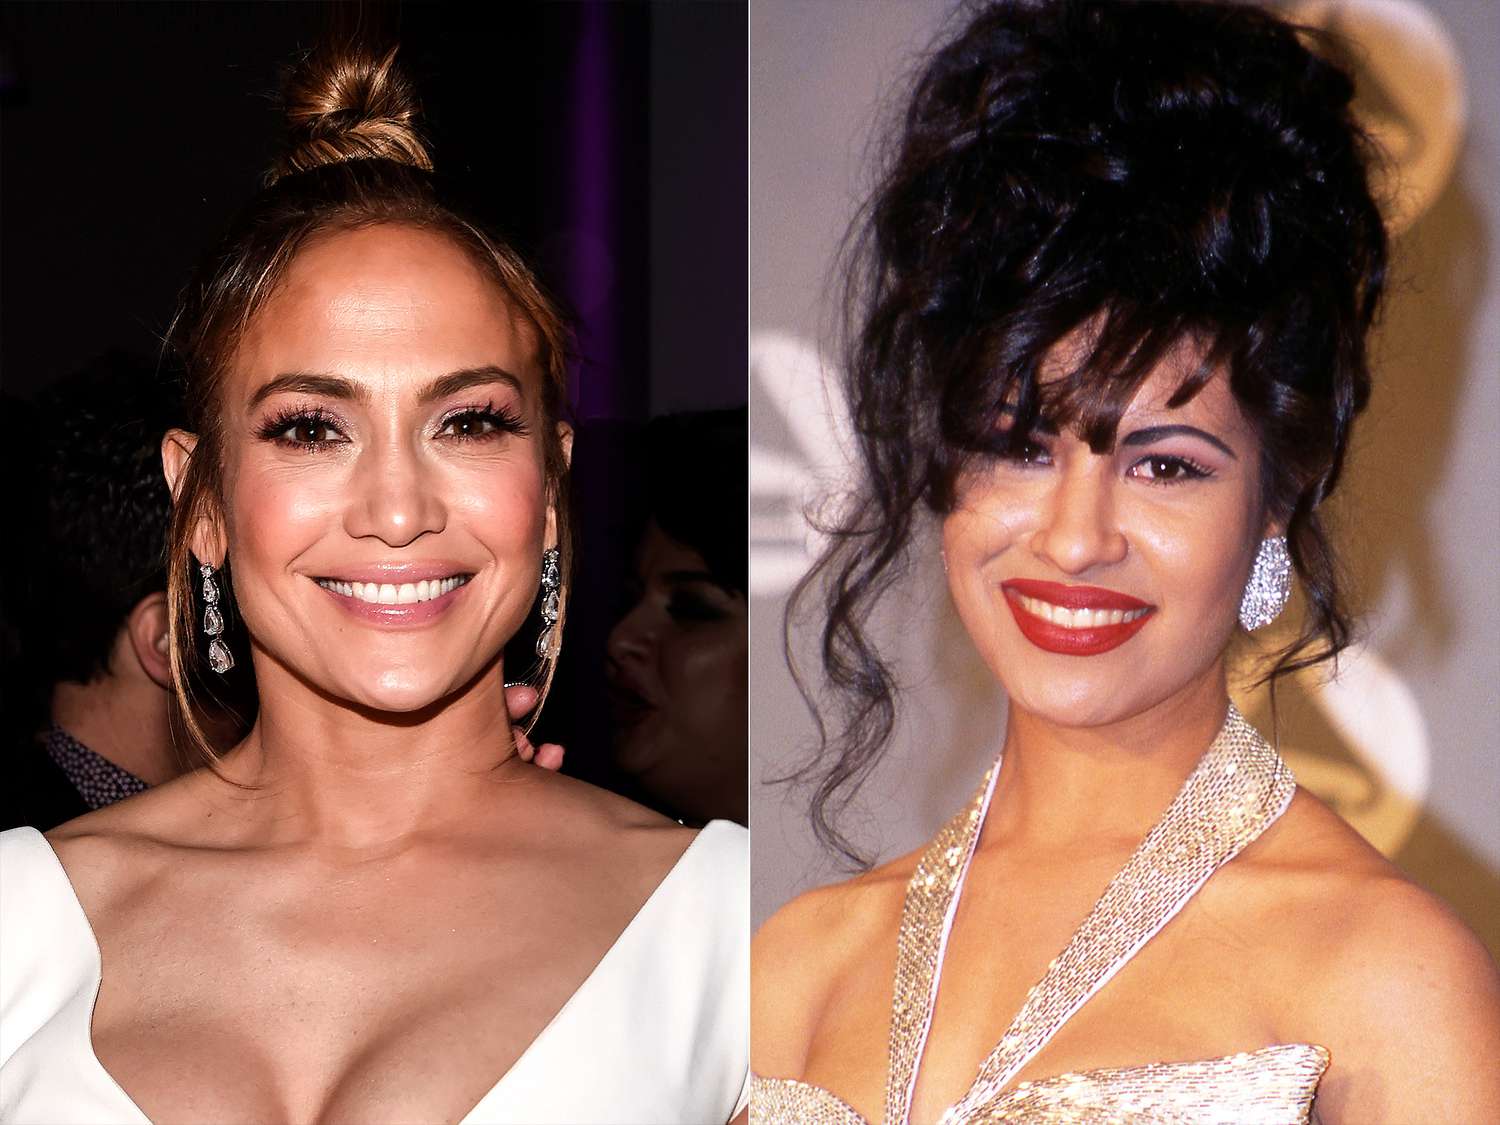 How Old Was Jennifer Lopez in "Selena"?